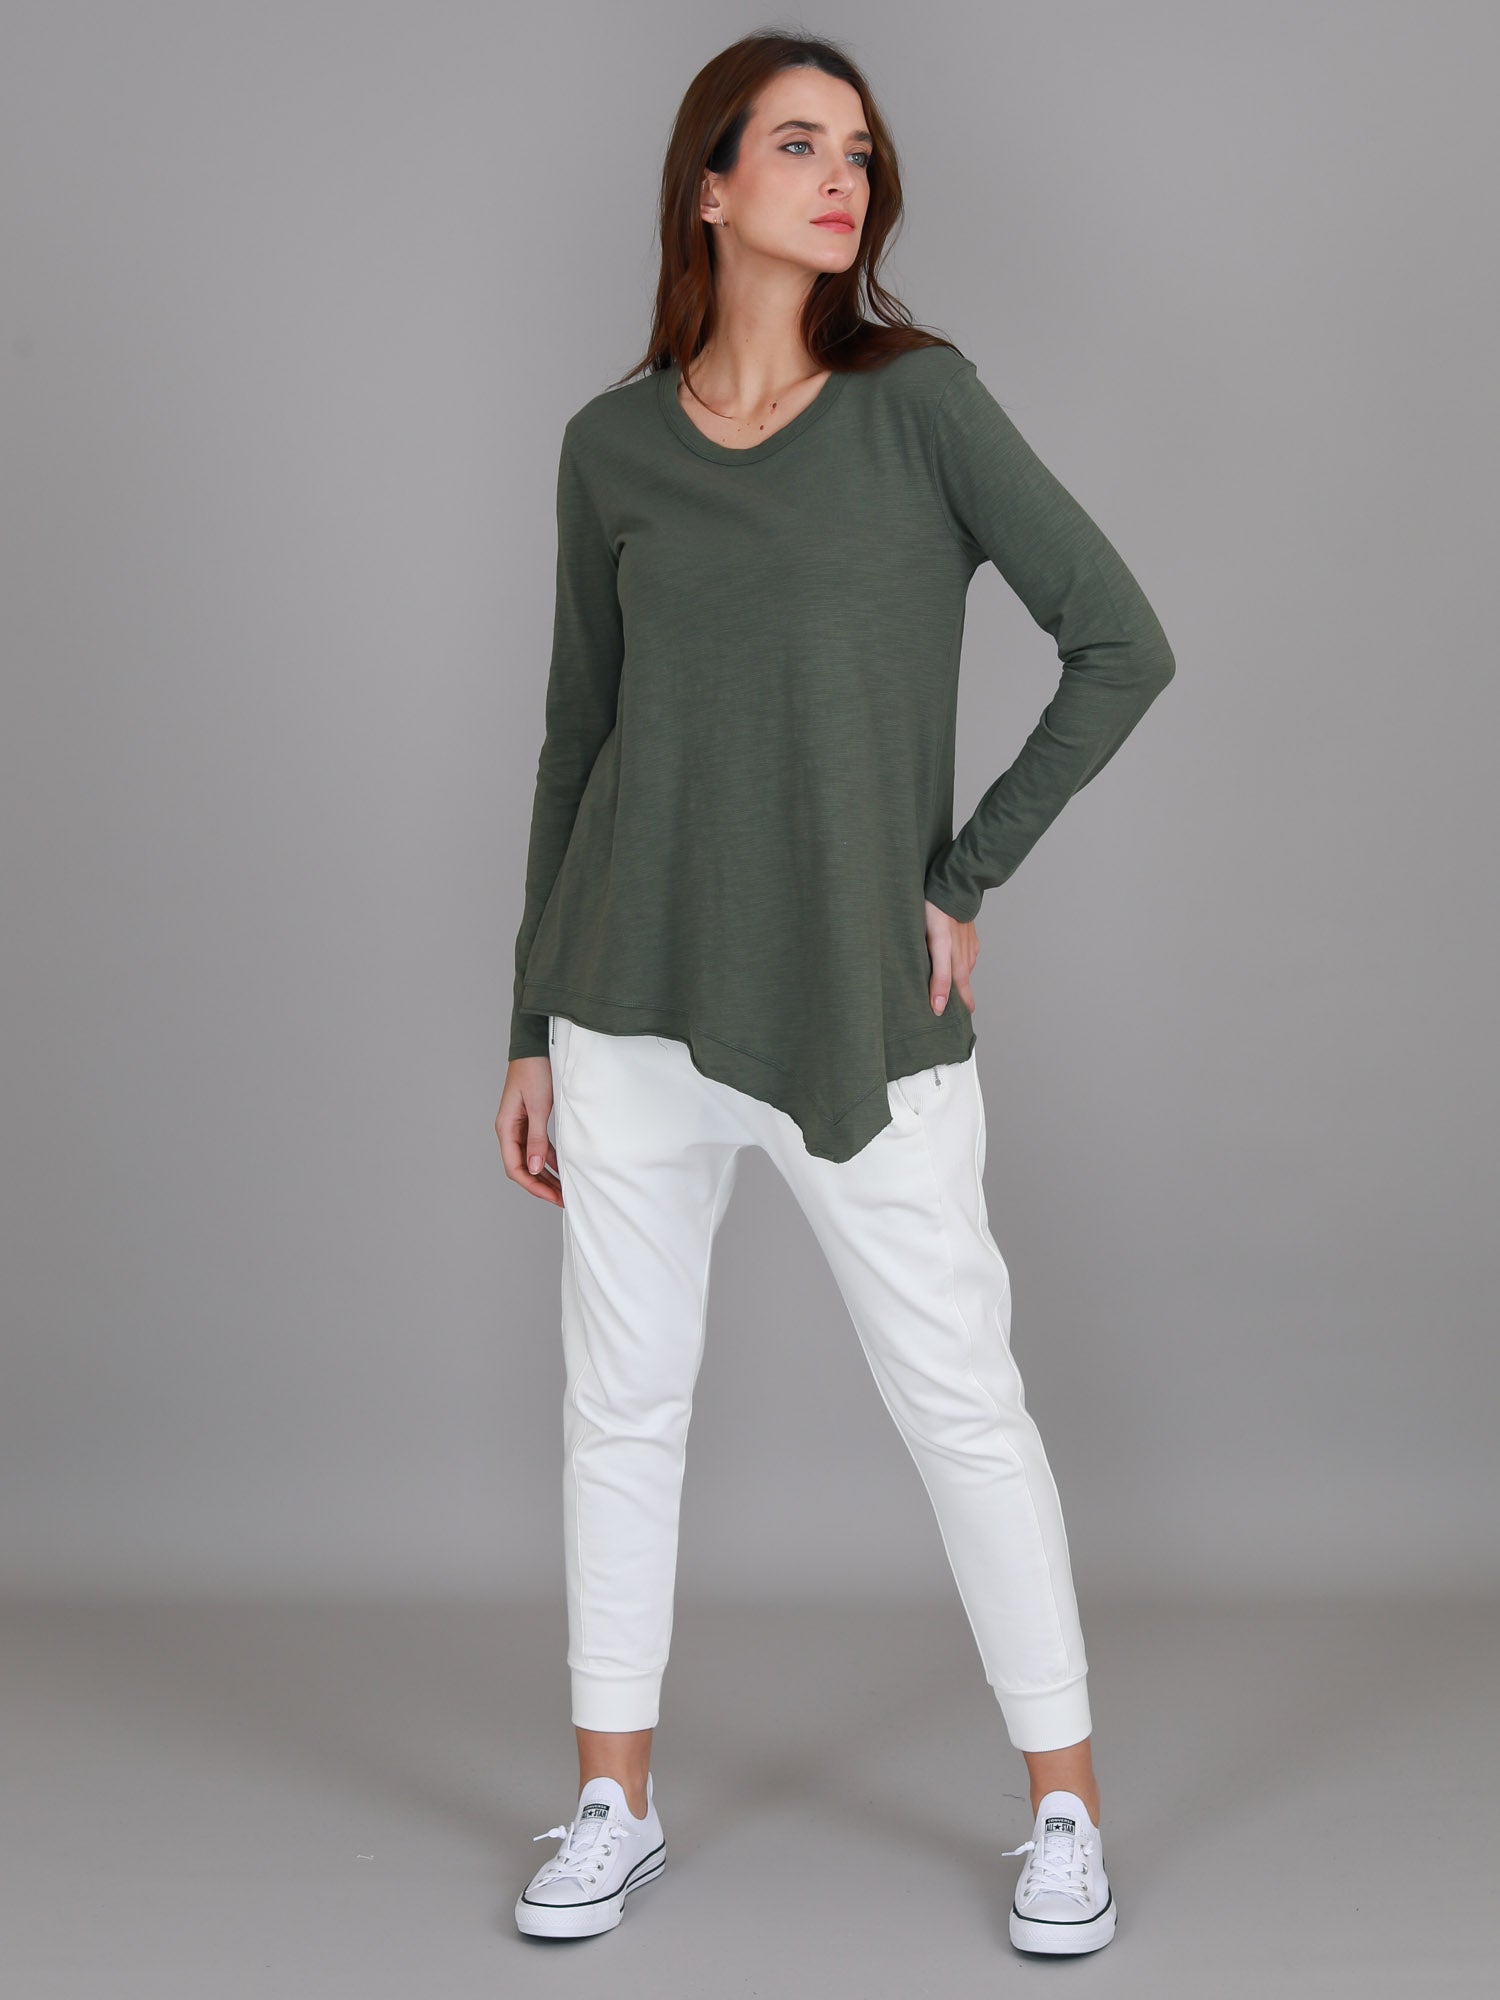 long sleeve green top #color_khaki